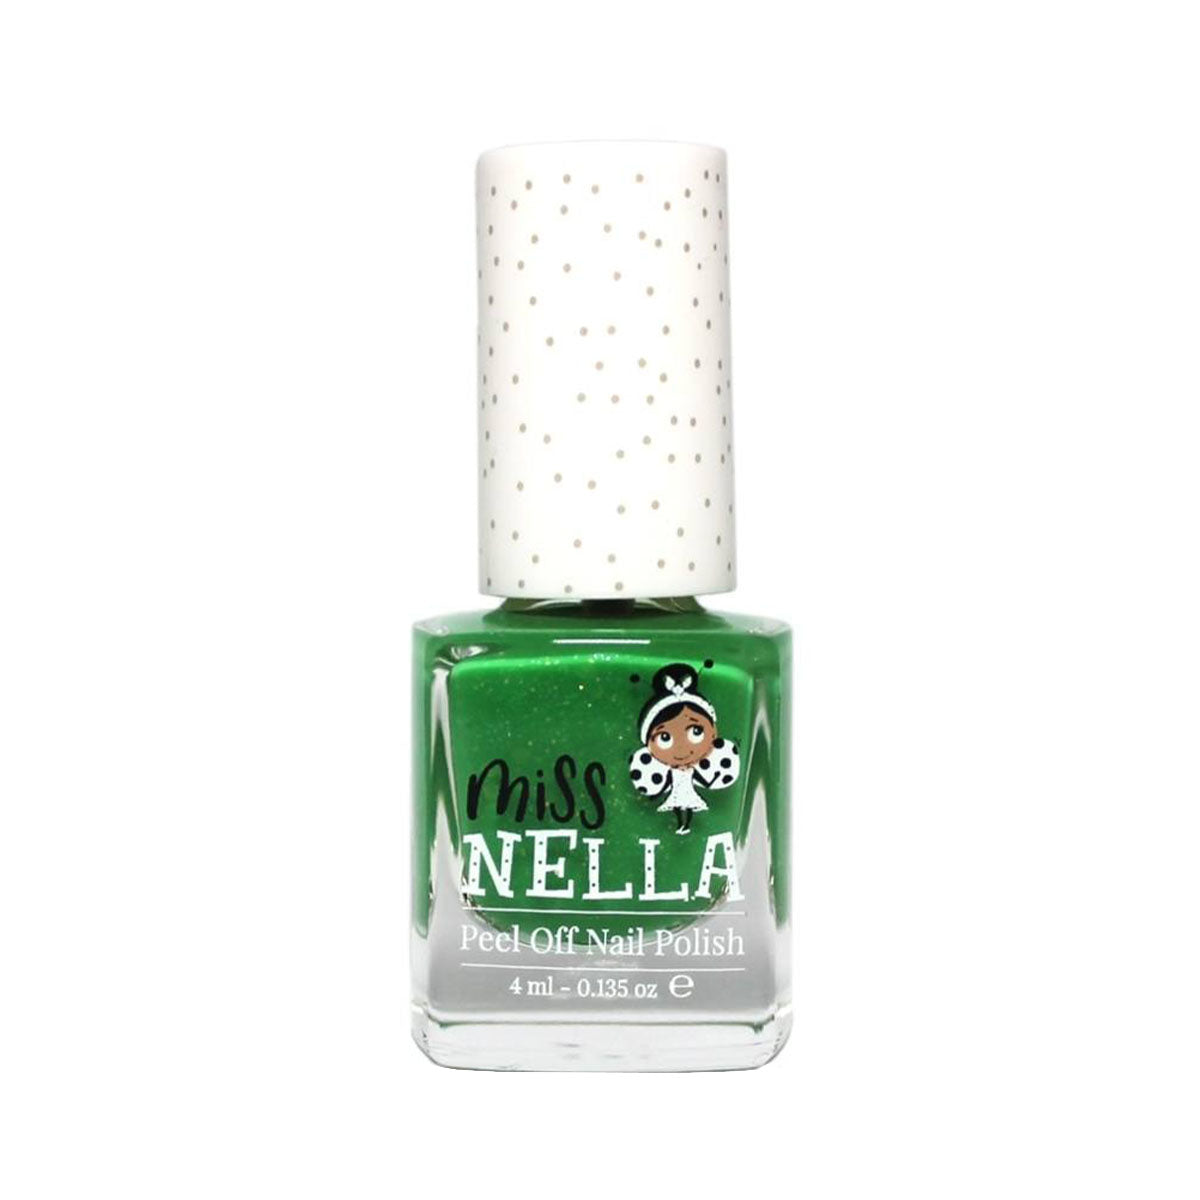 Laat de nageltjes van jouw kindje shinen met de nagellak kiss the frog van het merk Miss Nella. De peel off nagellak is speciaal ontworpen voor kinderen en is vrij van chemicaliën. In verschillende kleuren. VanZus